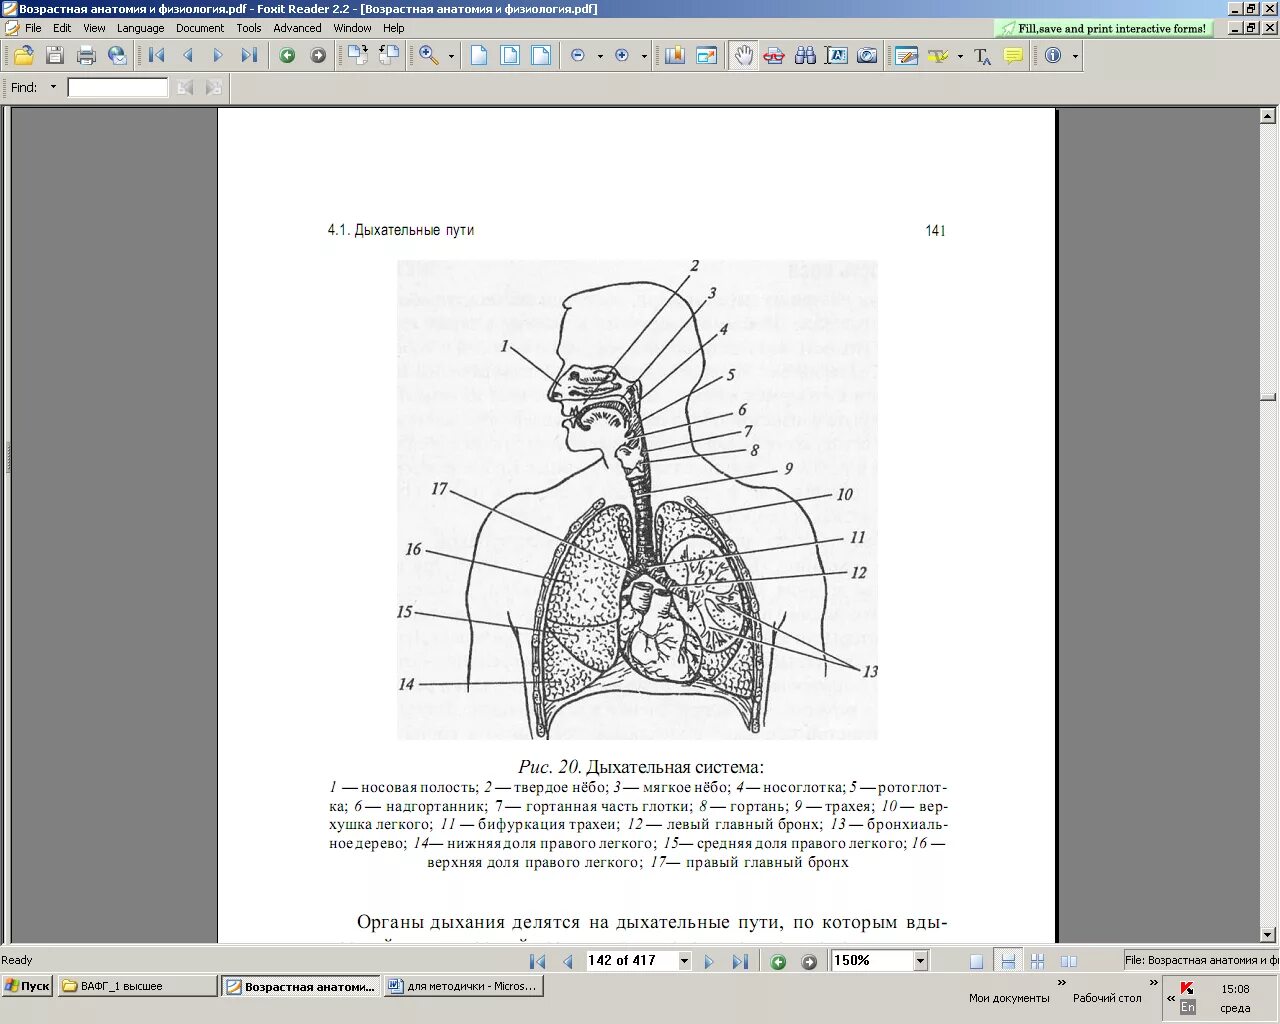 Сделайте подписи к рисунку строение. Динамическая схема дыхательных путей. Рассмотрите строение отделов дыхательной системы. Строение отделов дыхательной системы с обозначениями строение. Дыхательная система с подписями.